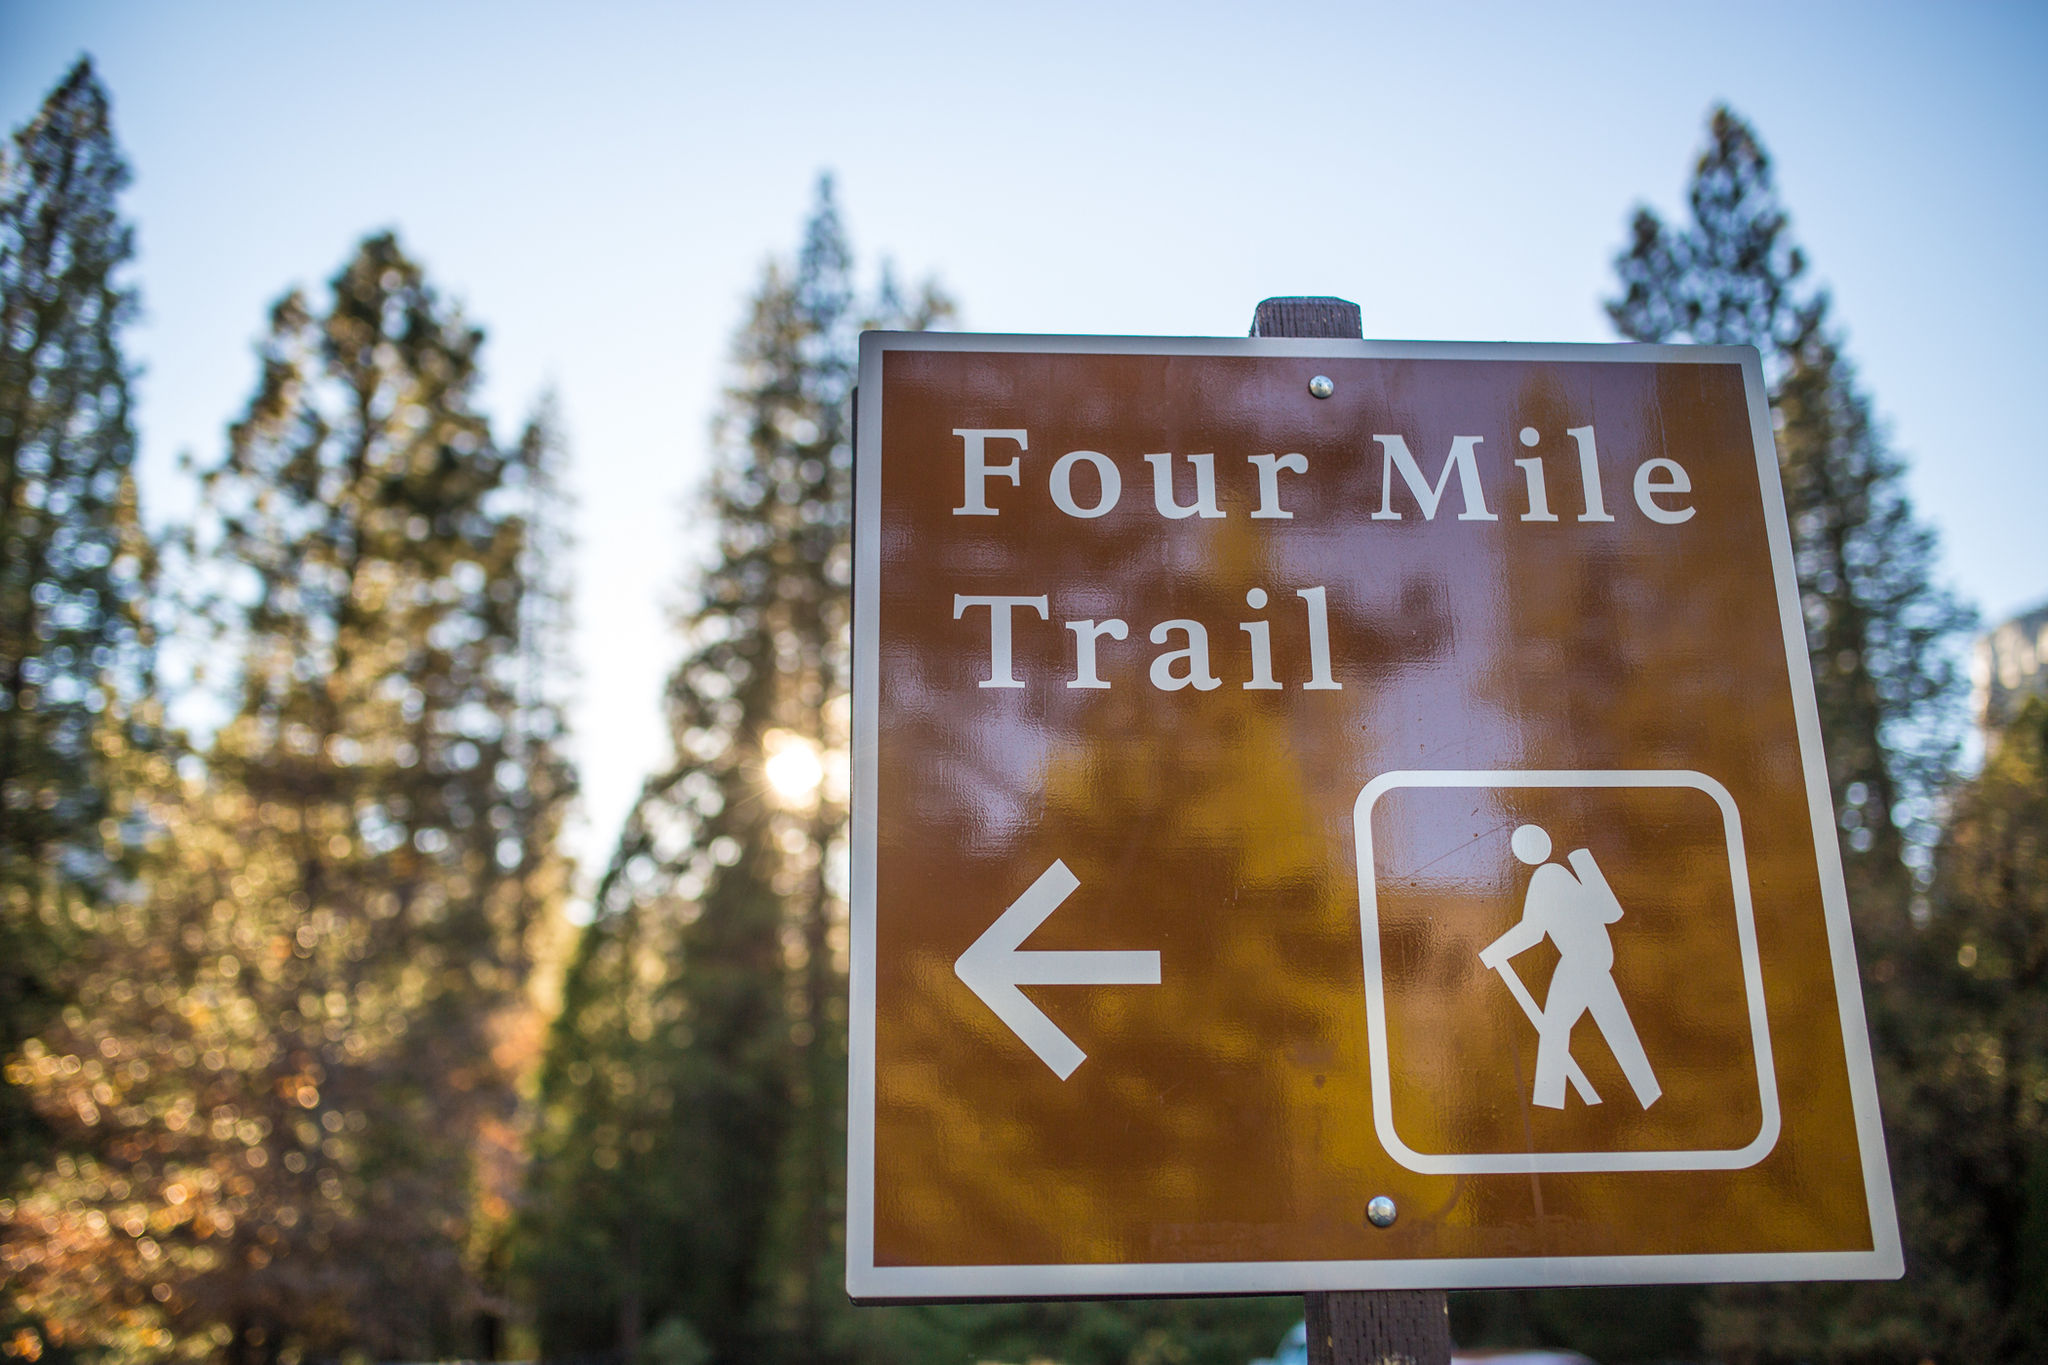 Four Mile Trail trailhead